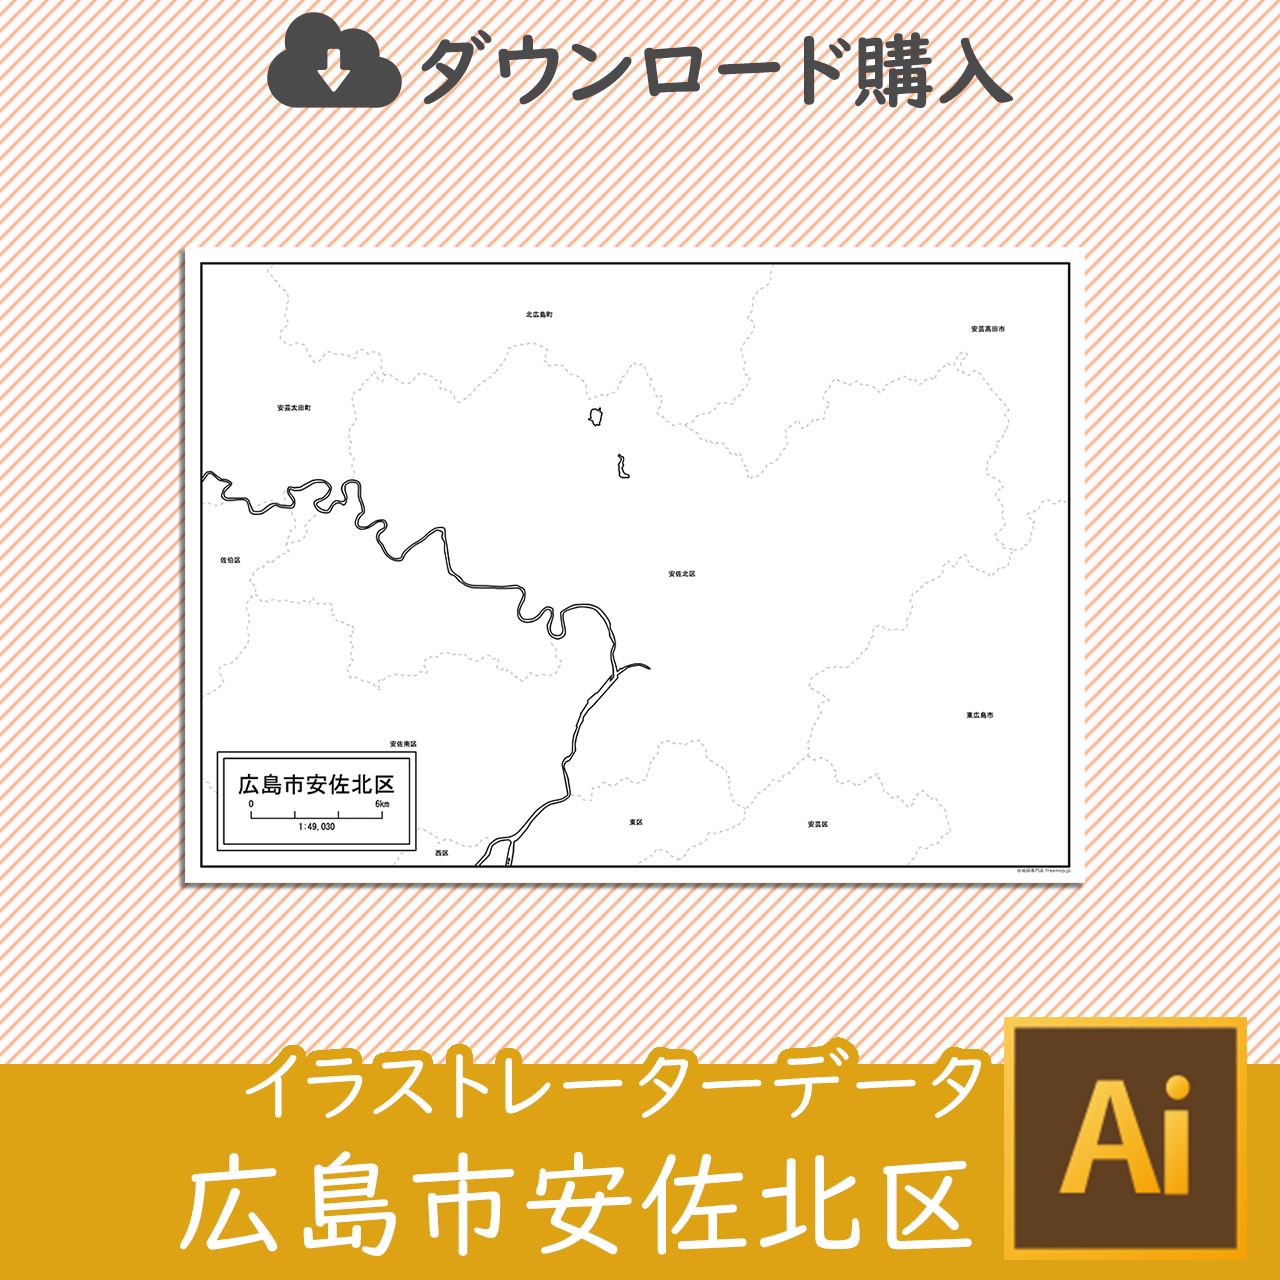 広島市安佐北区のaiデータのサムネイル画像